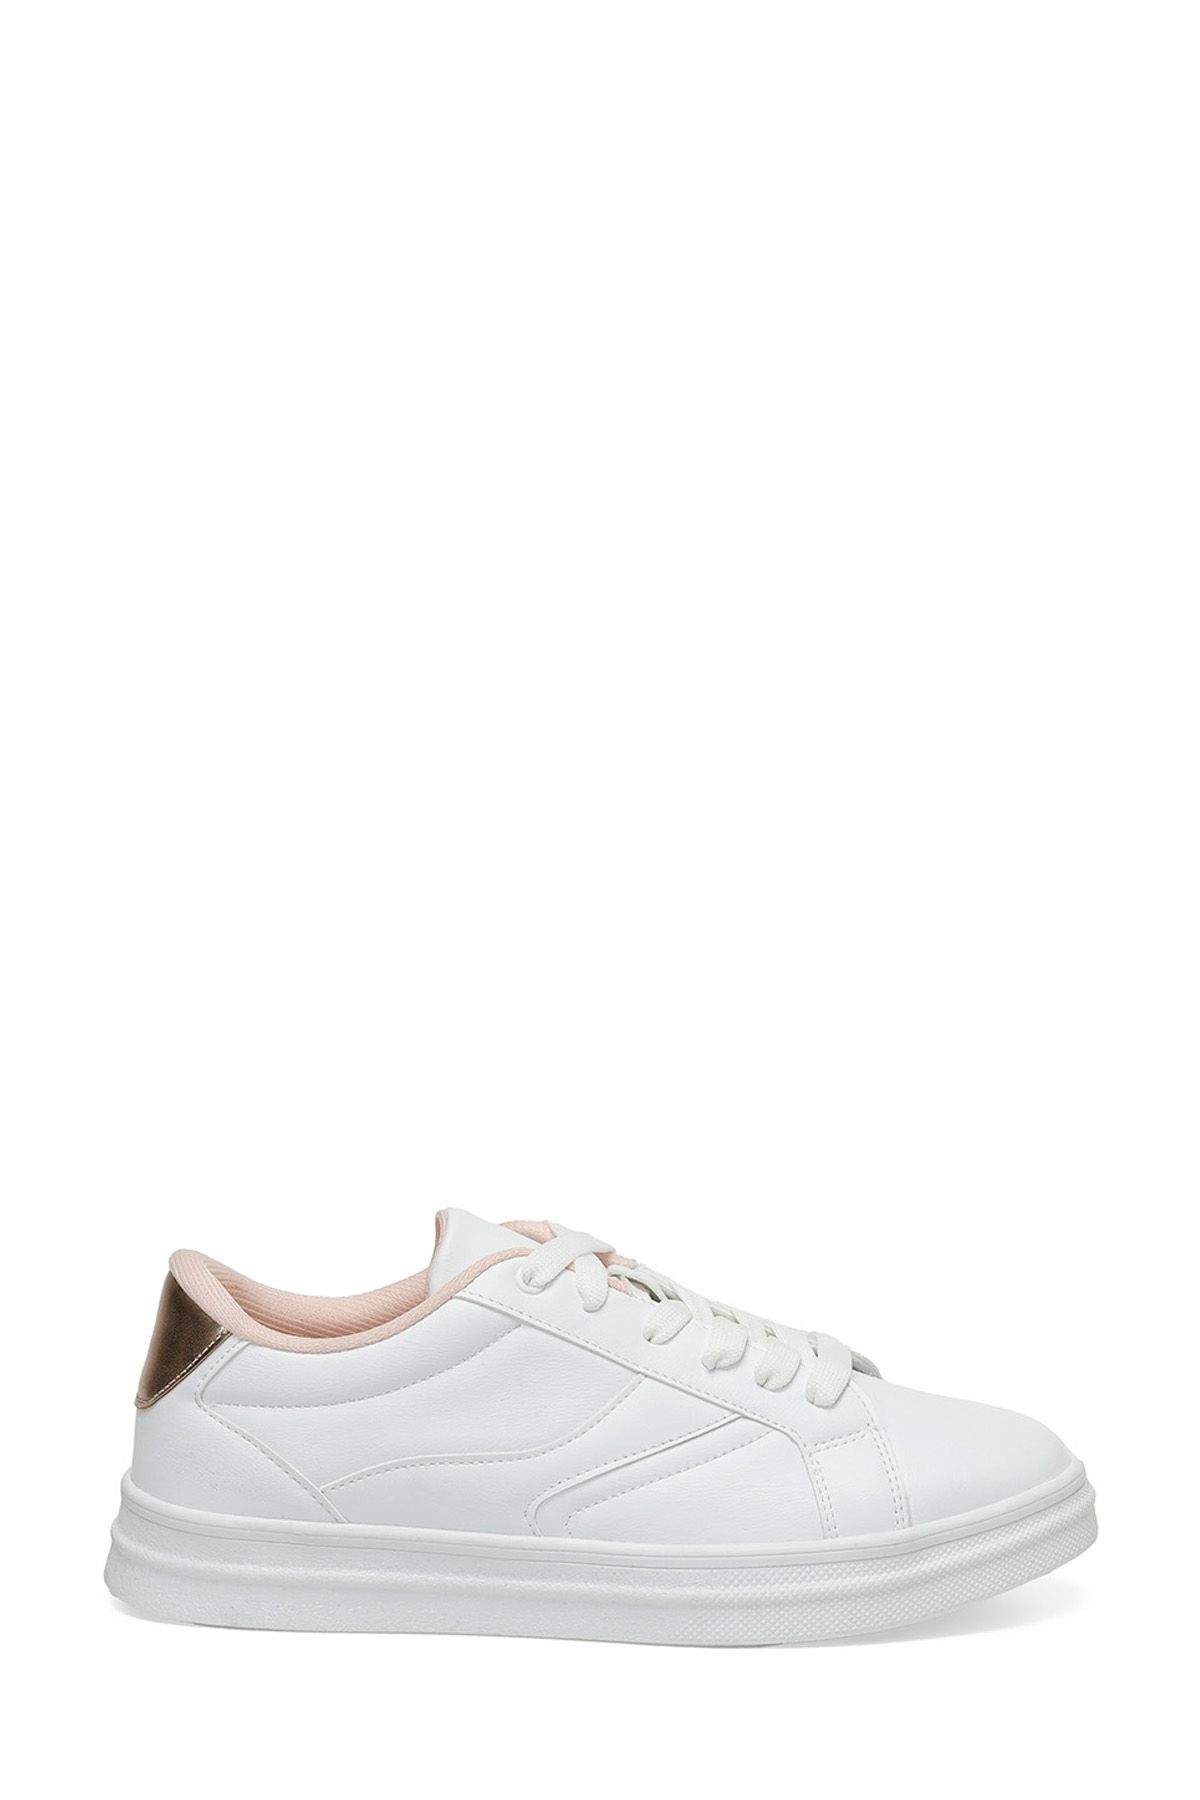 Torex TRX24S-013 4FX Beyaz Kadın Sneaker